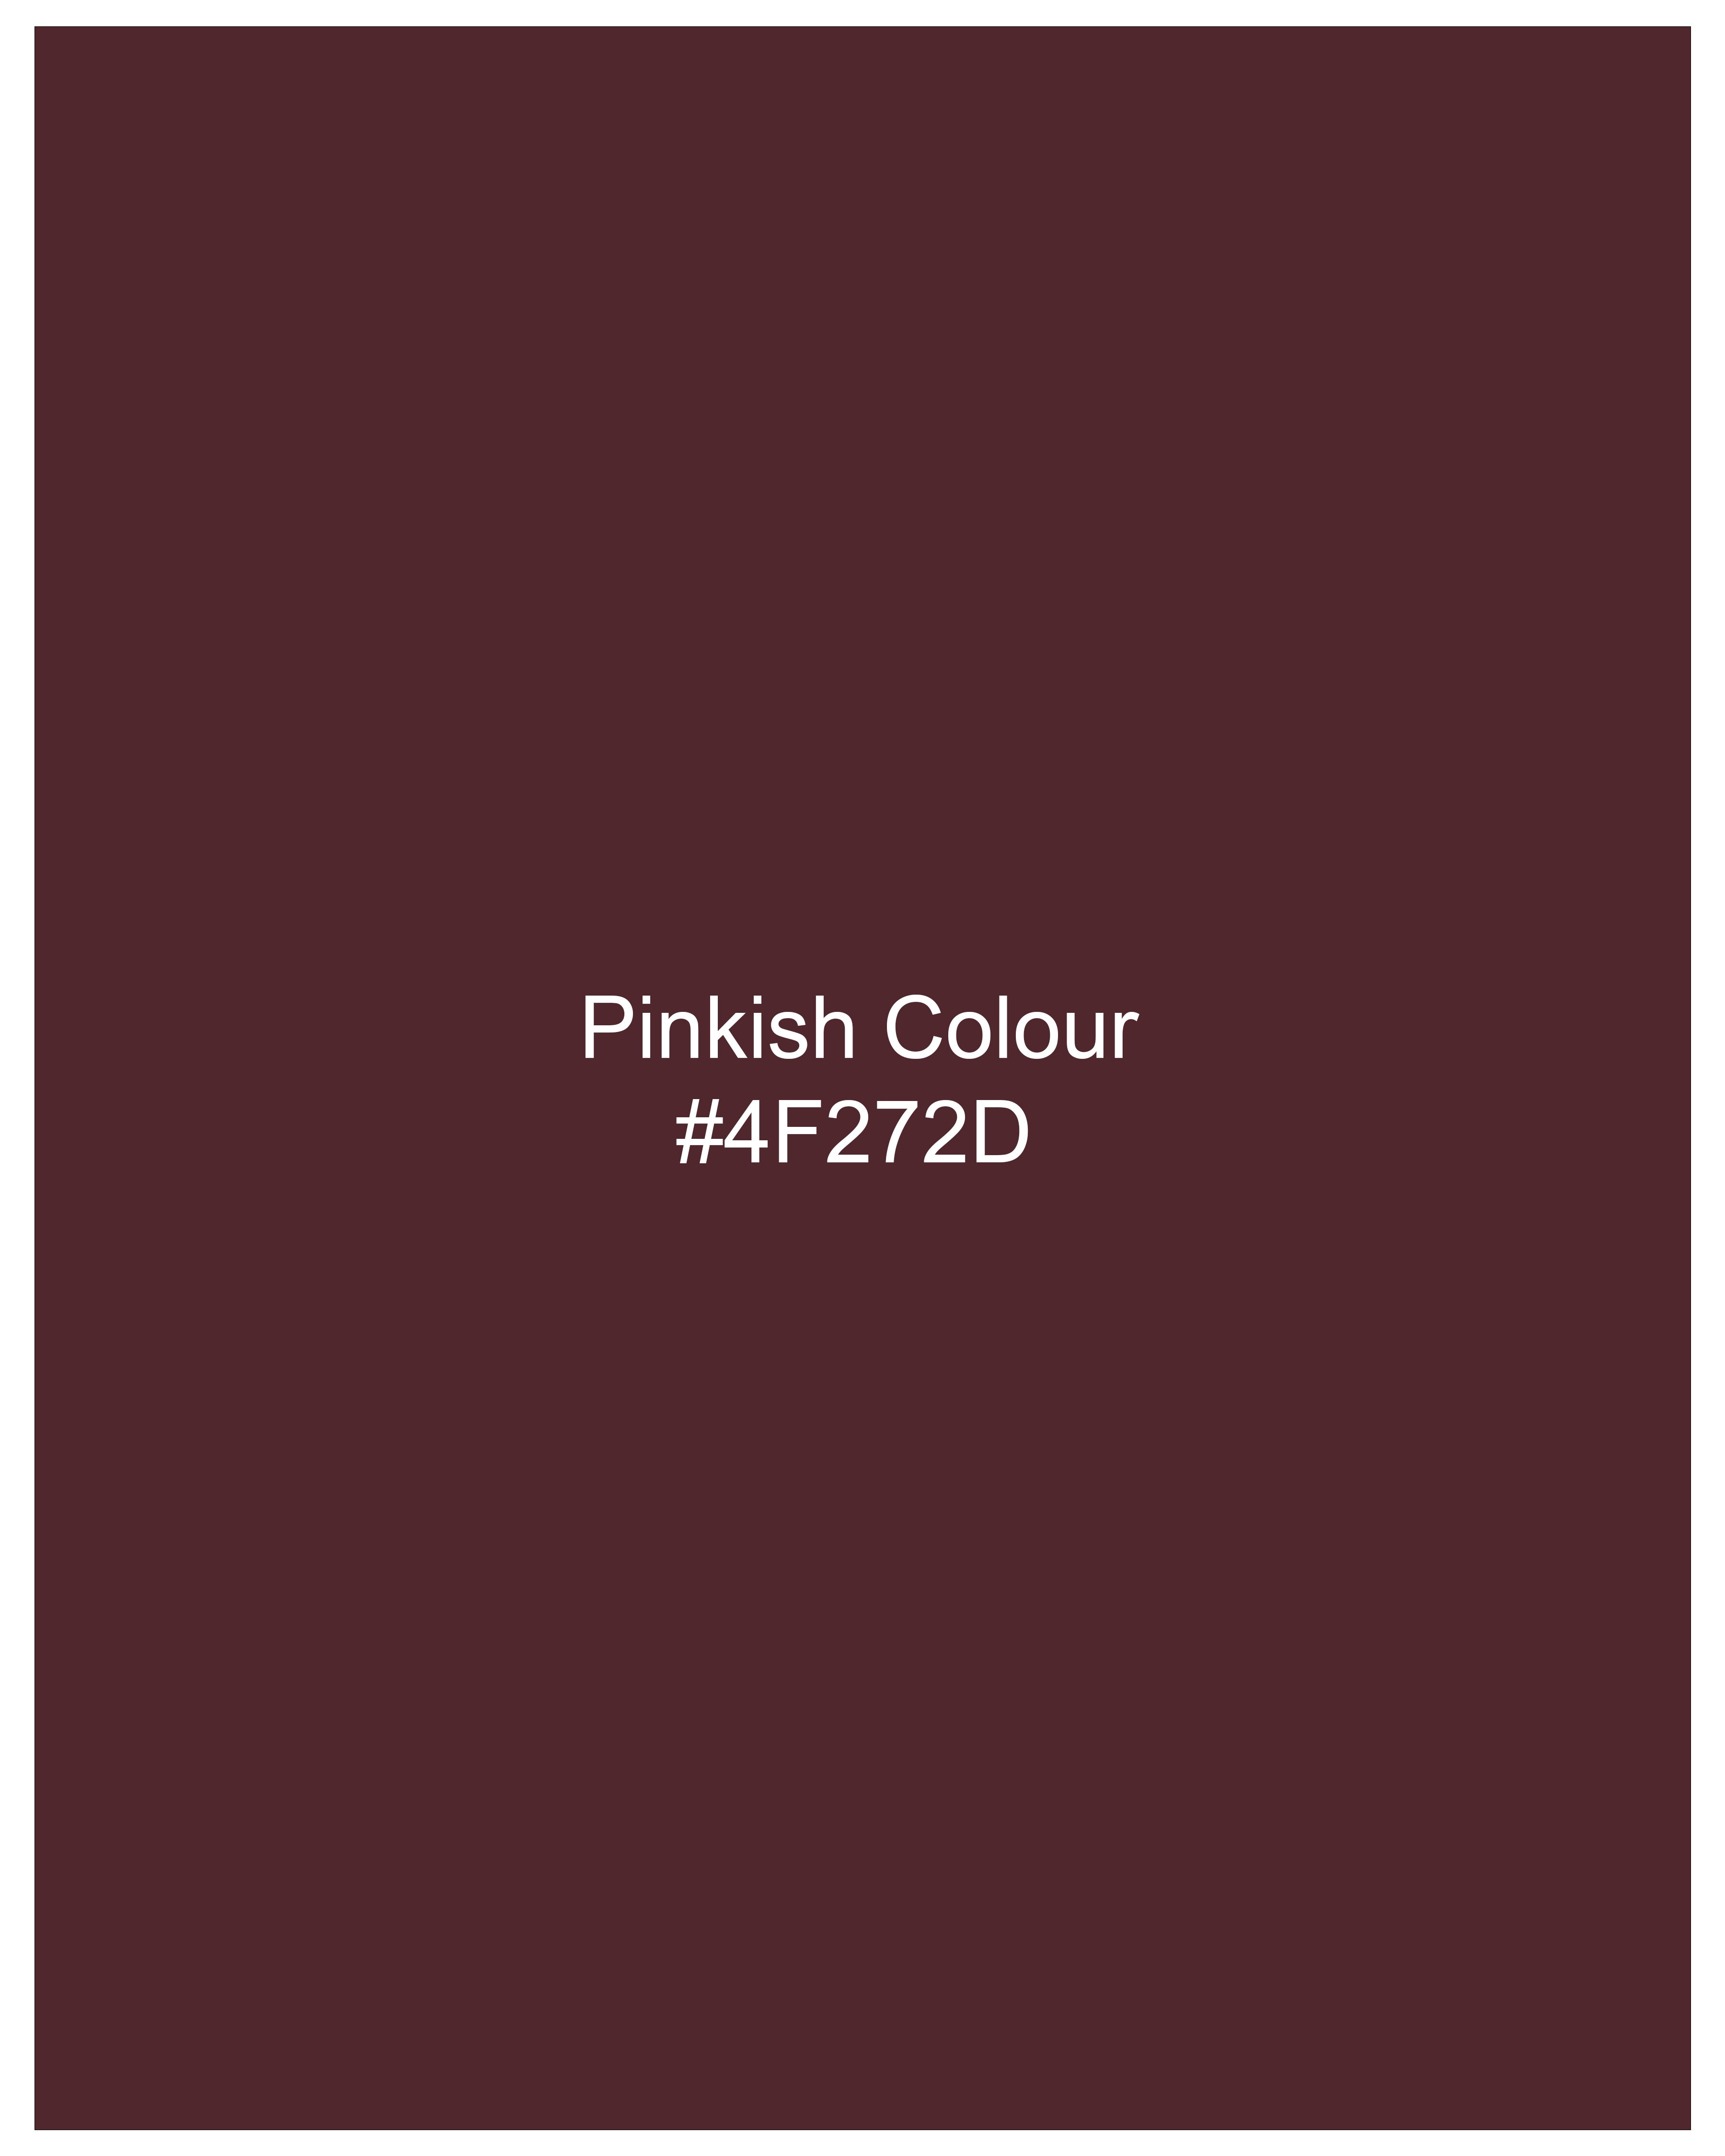 Pinkish Maroon Dobby Textured Pant T2721-28, T2721-30, T2721-32, T2721-34, T2721-36, T2721-38, T2721-40, T2721-42, T2721-44